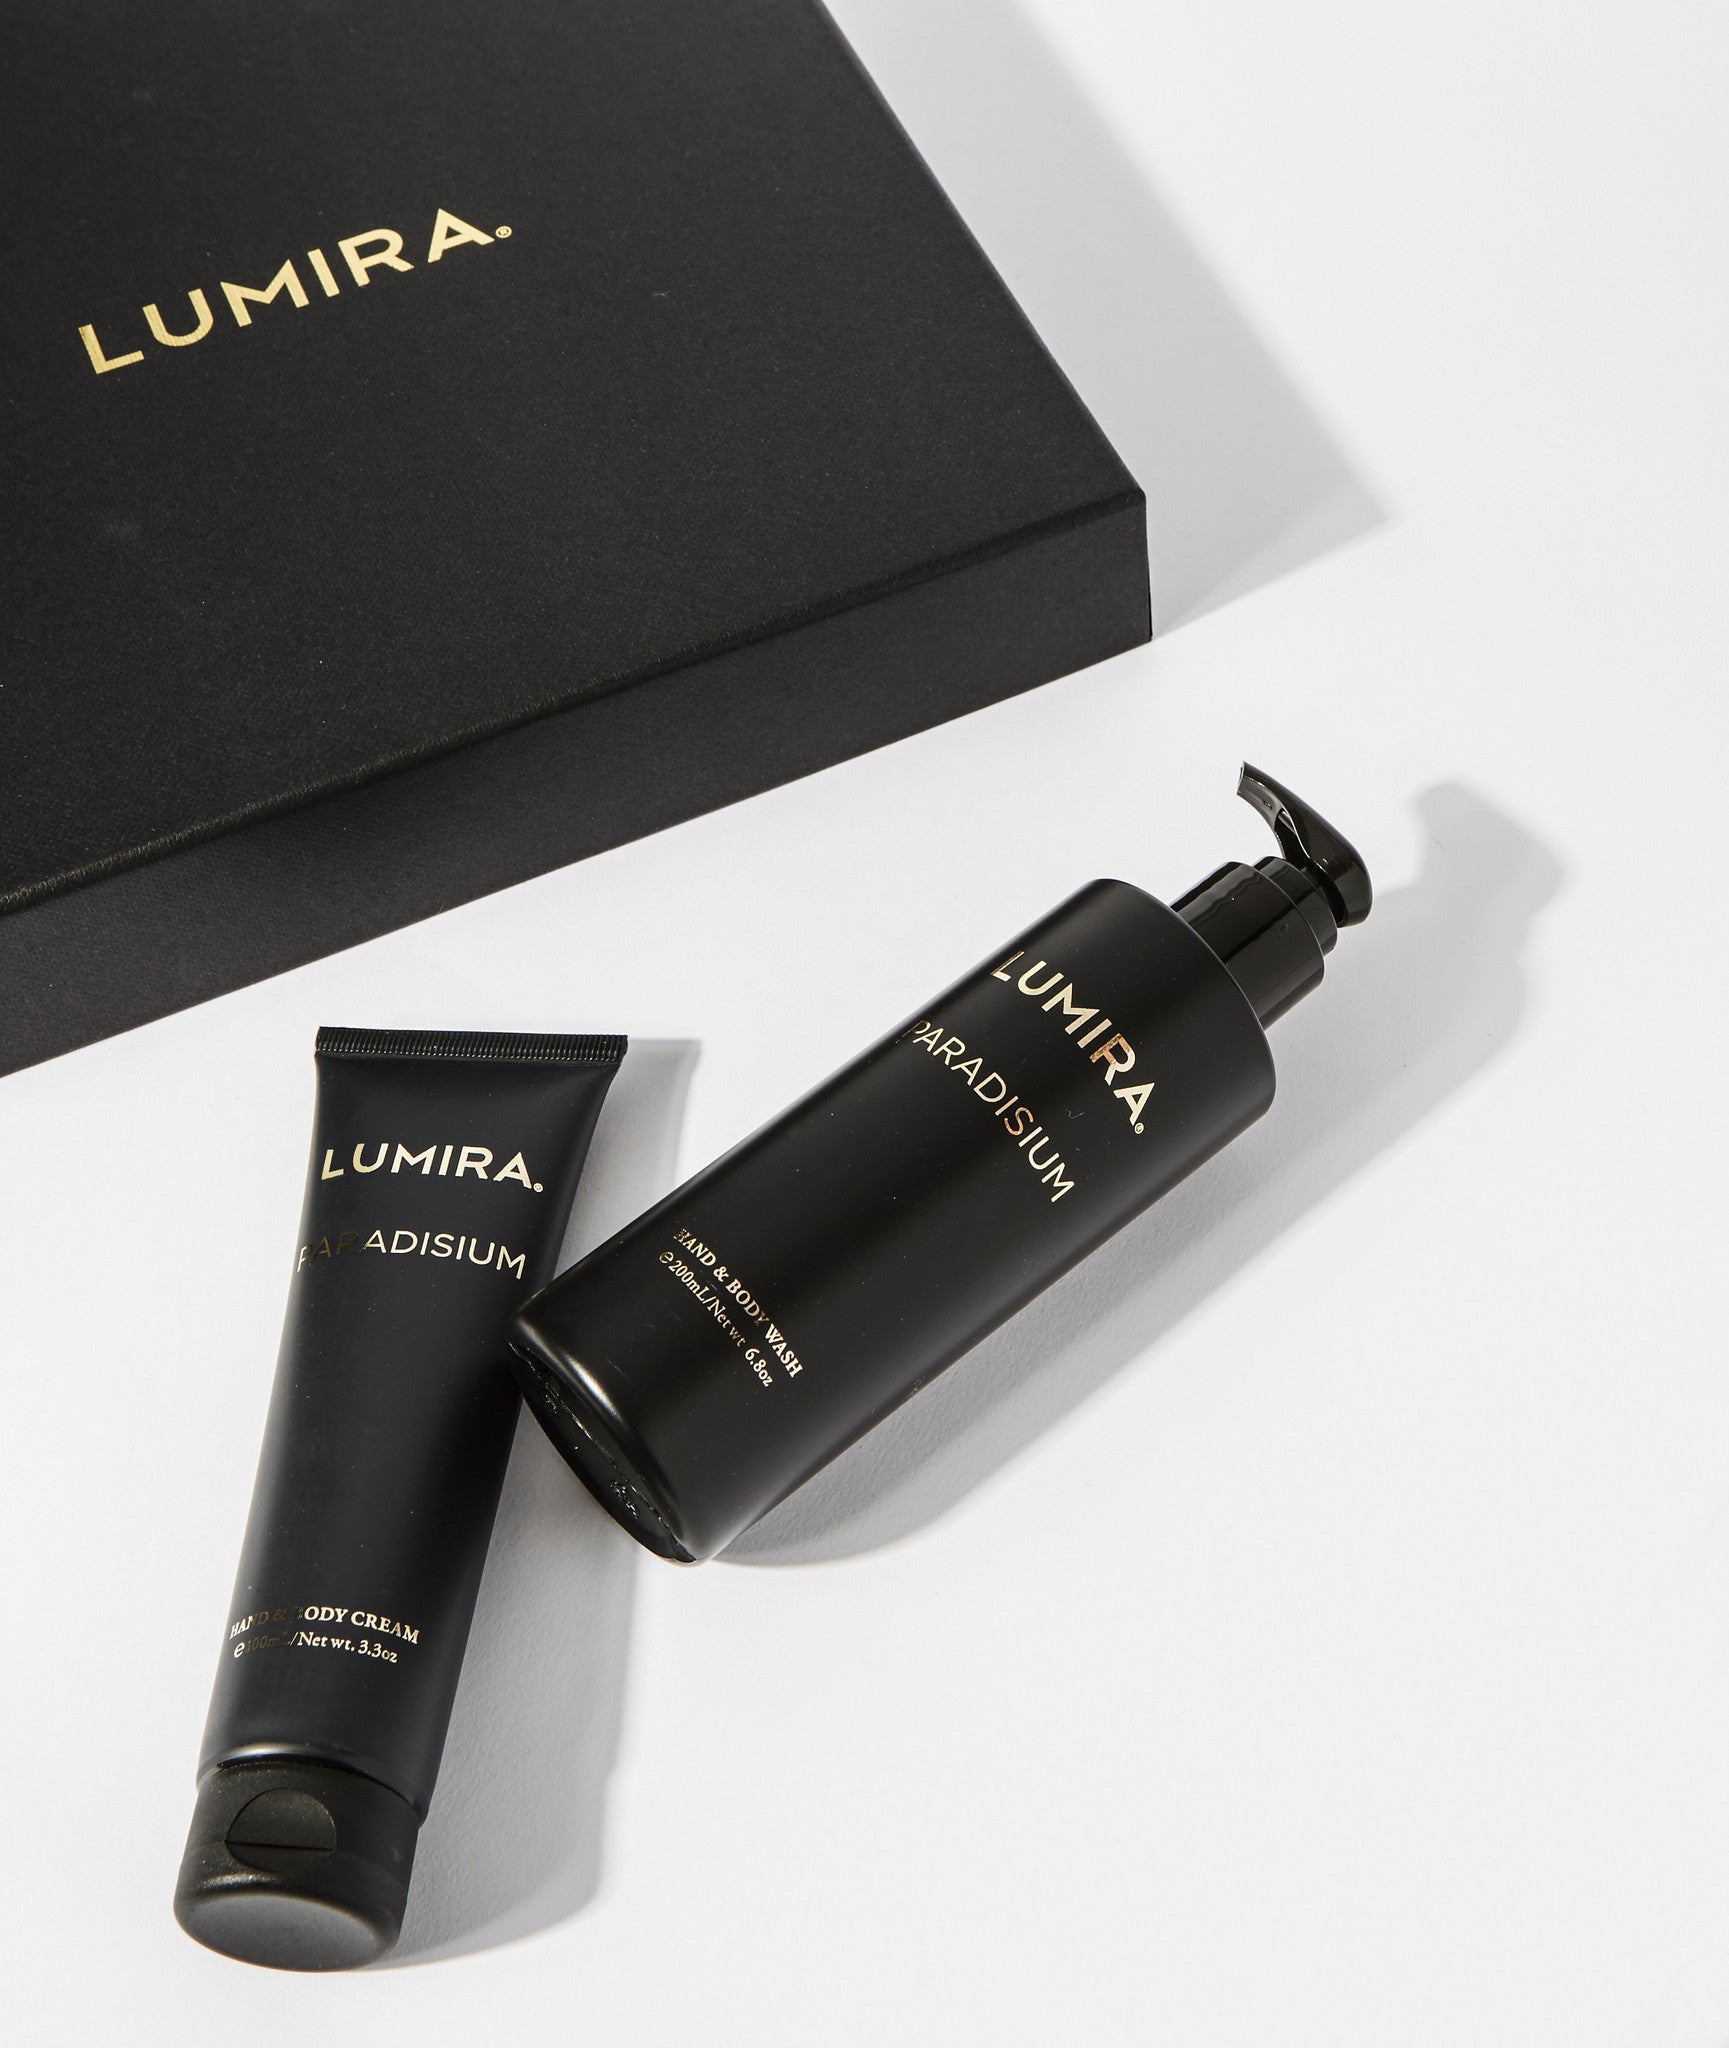 Lumira Paradisium Hand & Cream Gift Box